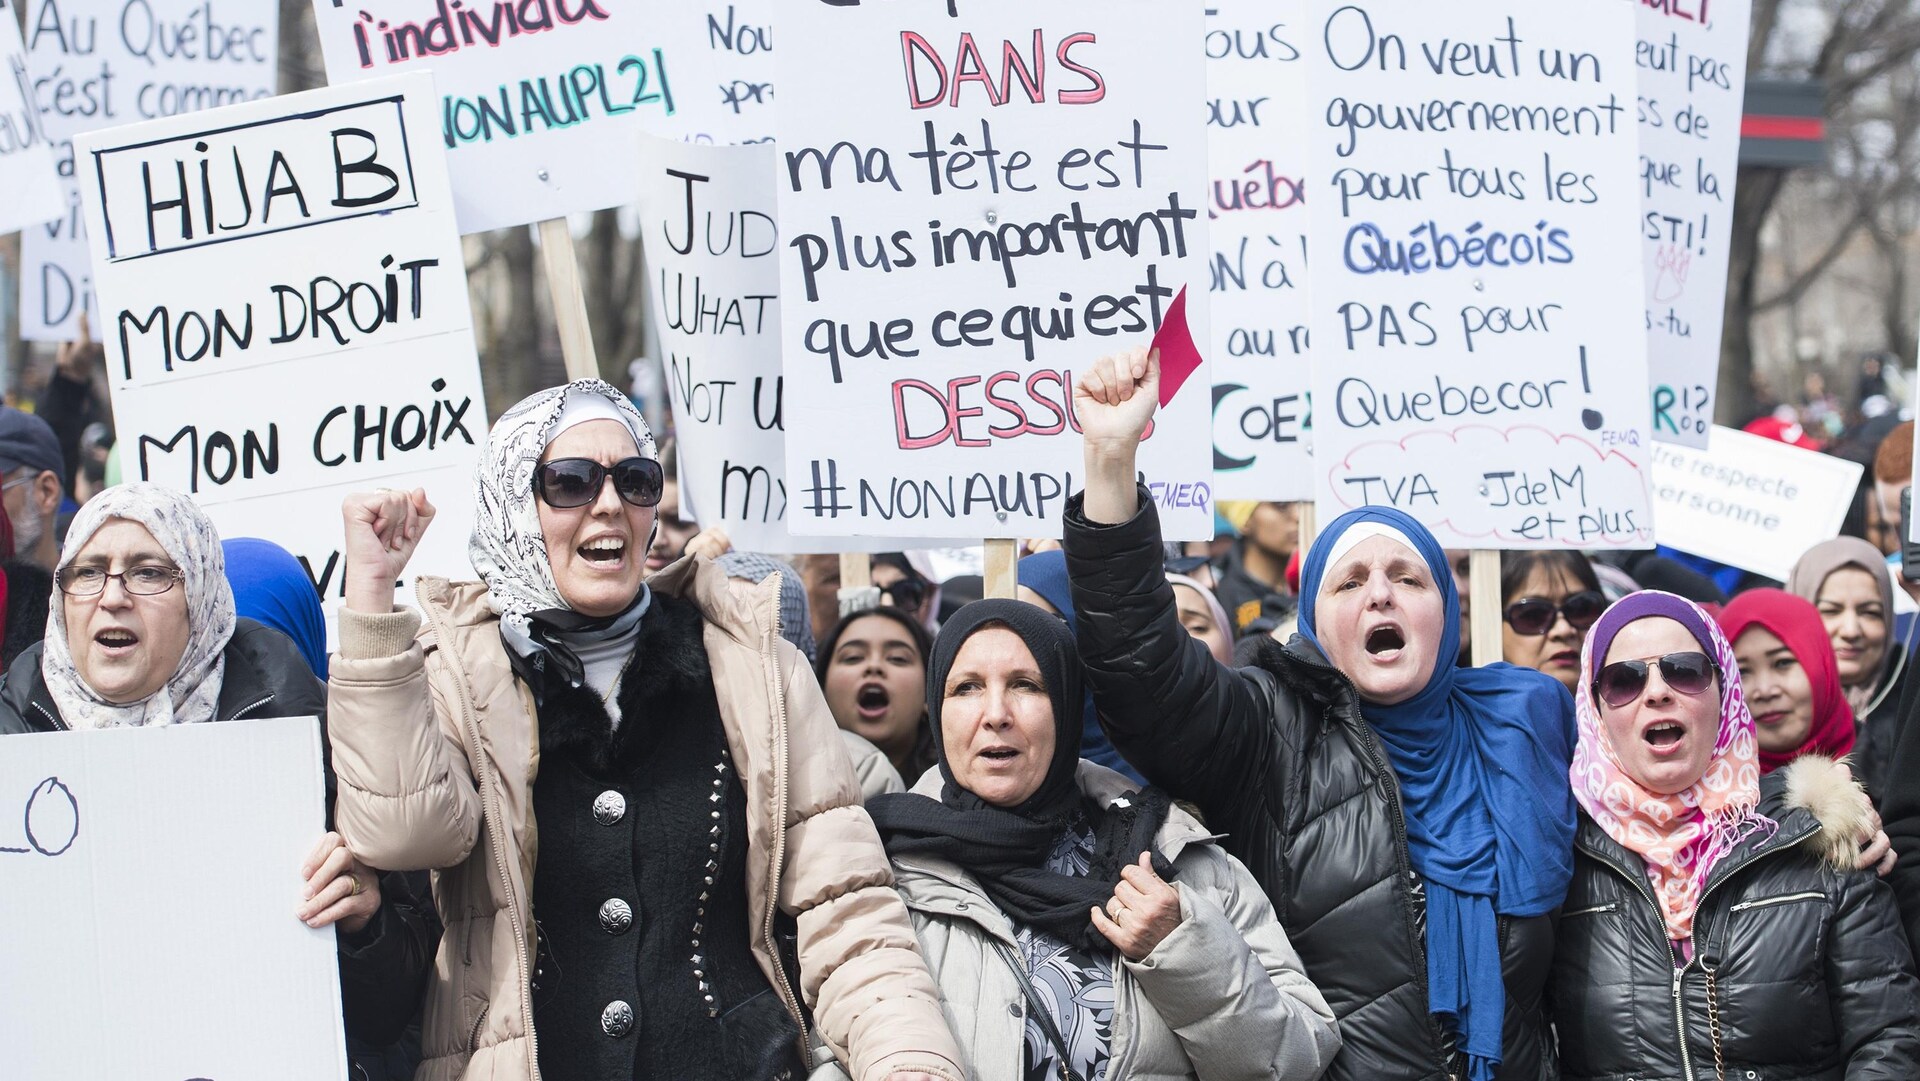 Des femmes voilées manifestent avec des pancartes disant entre autres « Hidjab, mon droit mon choix », « Ce qui est dans ma tête est plus important que ce qui est dessus », « On veut un gouvernement pour tous les Québécois, pas pour Québecor! »